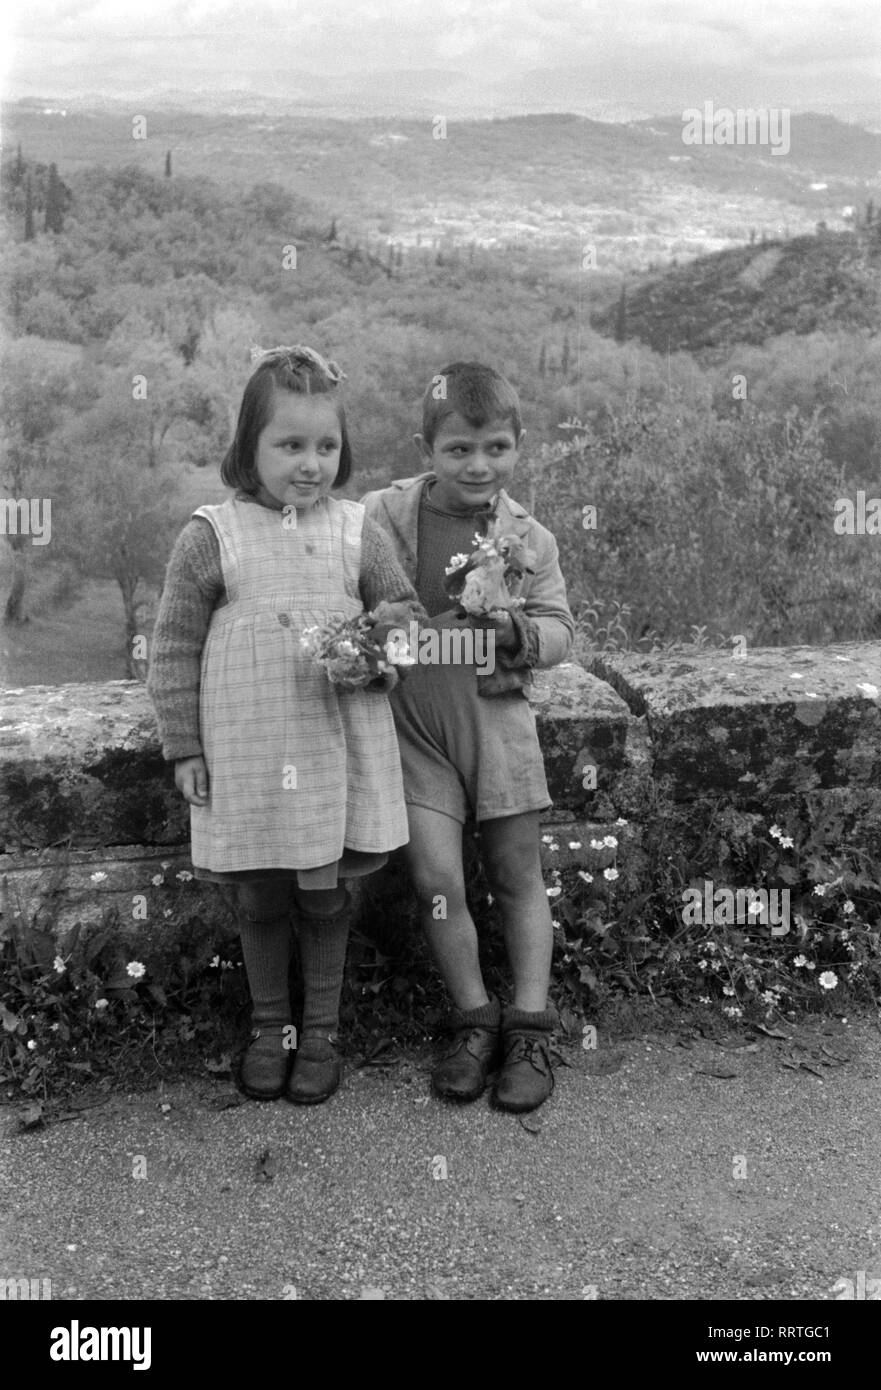 Viaggi in Grecia - Grecia - zwei kleine Kinder mit Blumenstrauß Griechenland im. Due bambini con fiori. Data dell'immagine 1954 circa. Foto Erich Andres Foto Stock